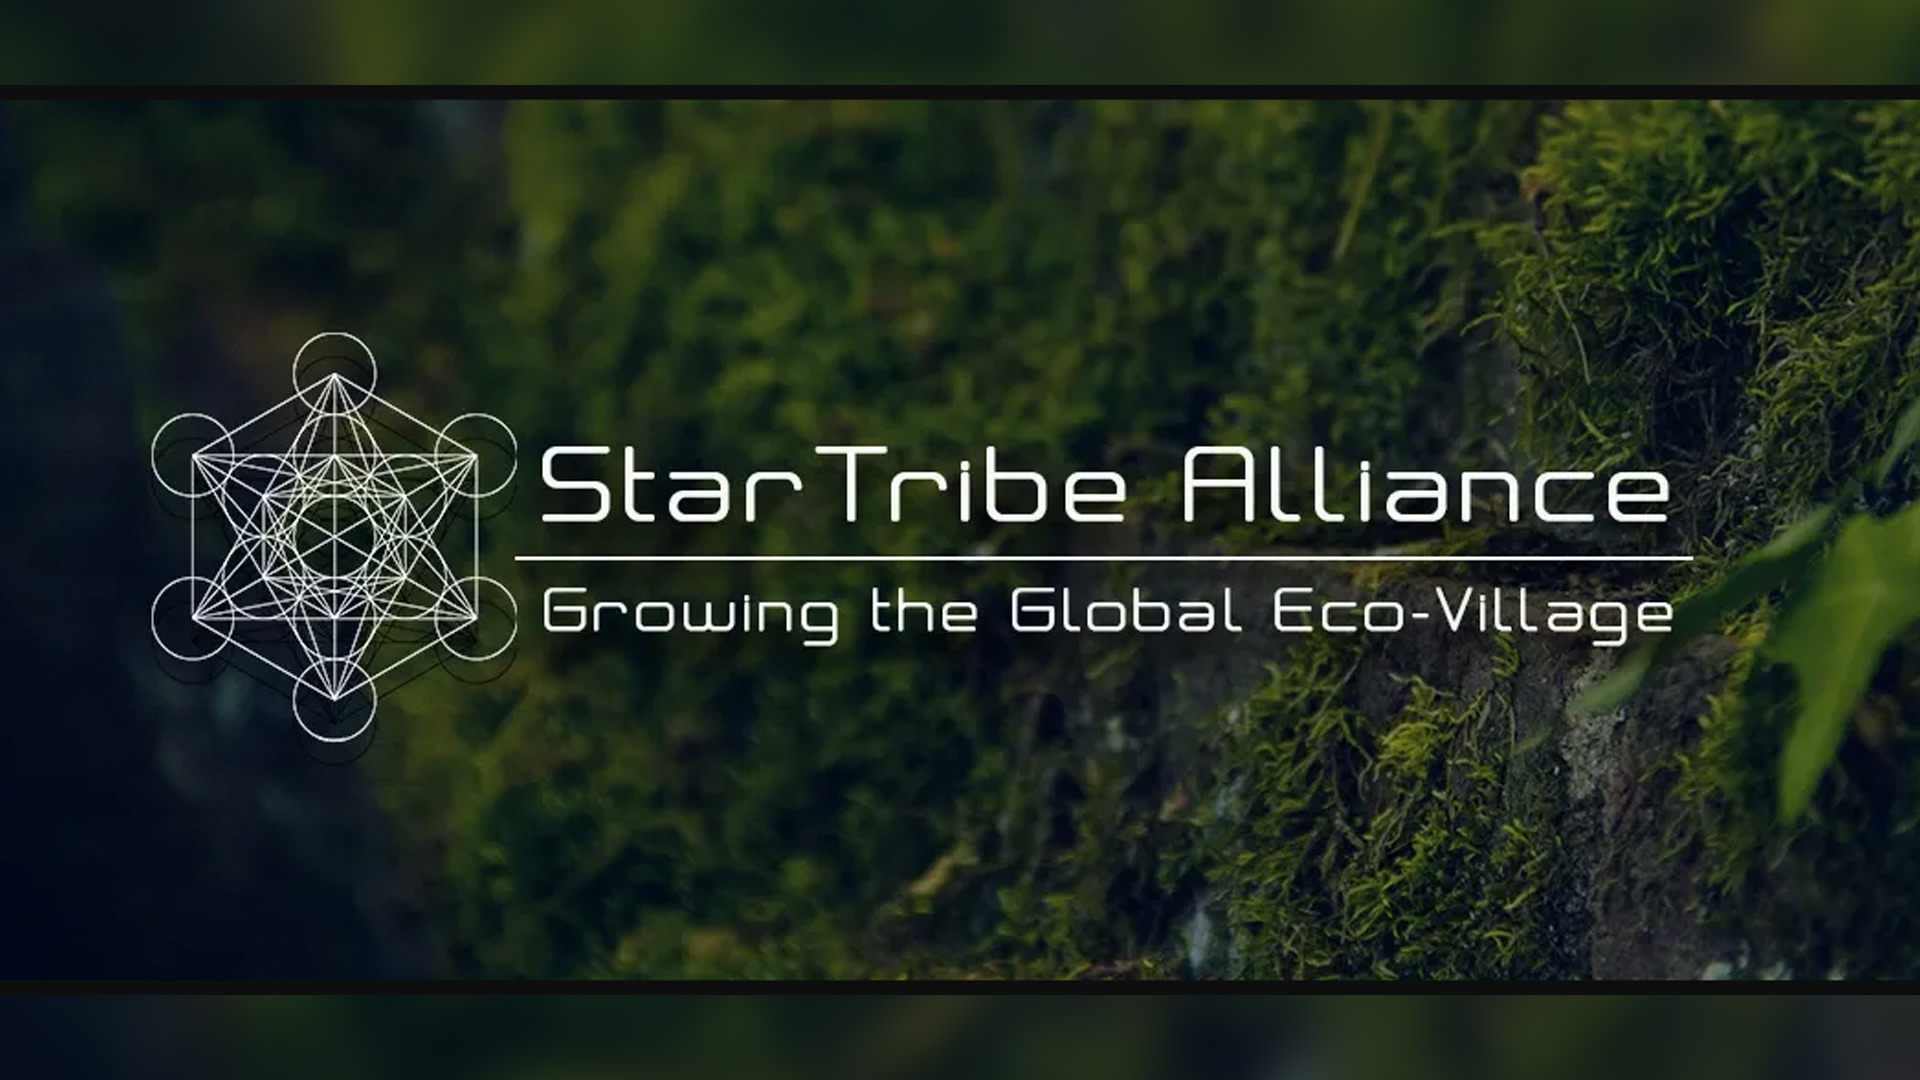 celestial_partners_star-tribe-alliance.jpg